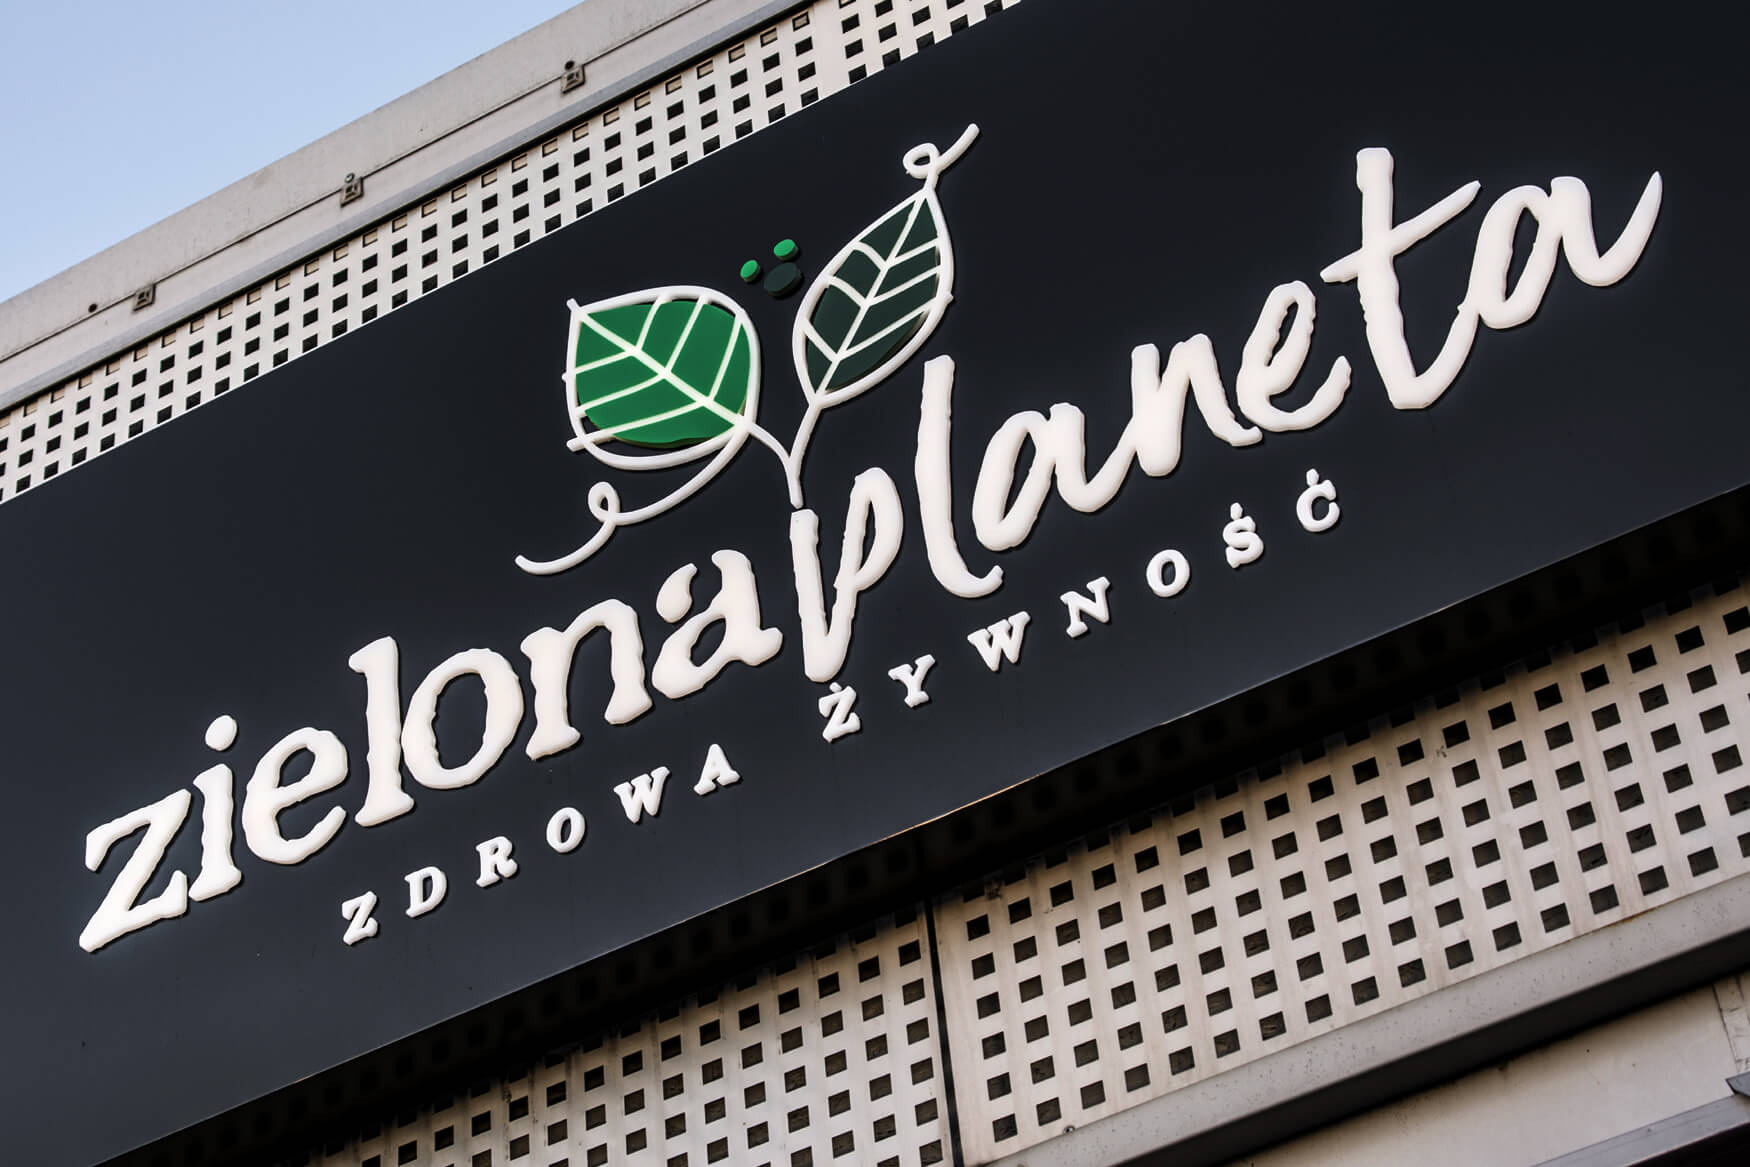 planète verte - Zielona Planeta - coffret publicitaire lumineux avec lettres spatiales et logo